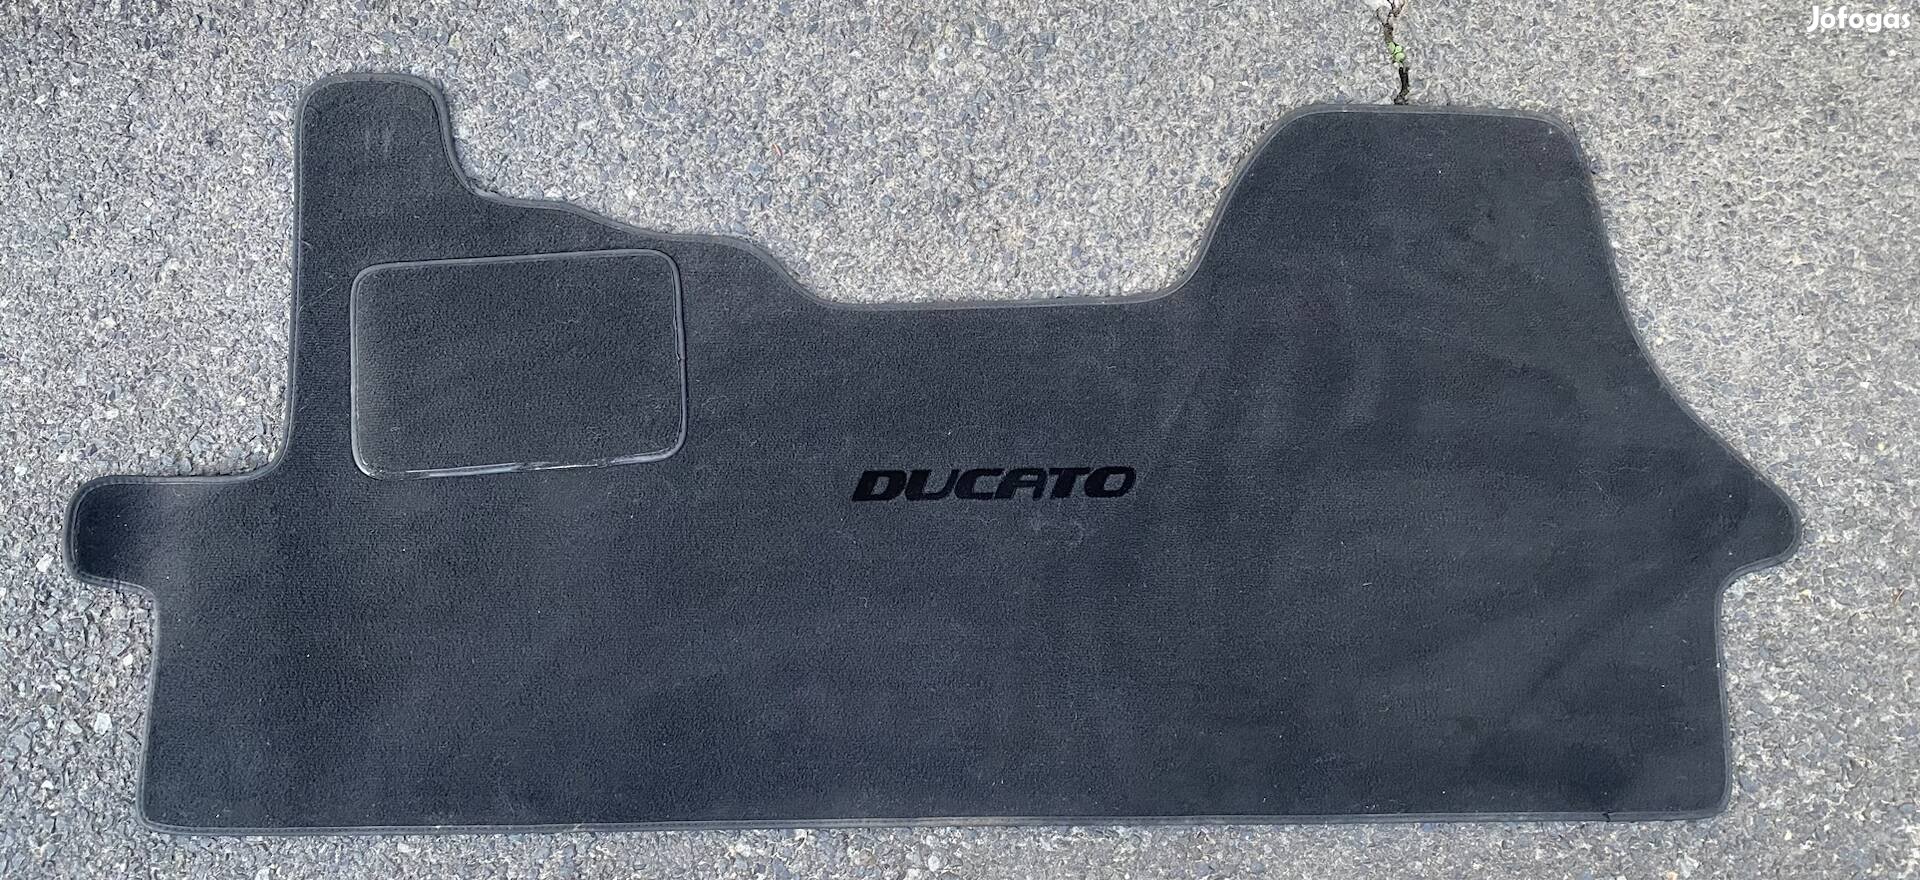 Ducato szőnyeg 2006-